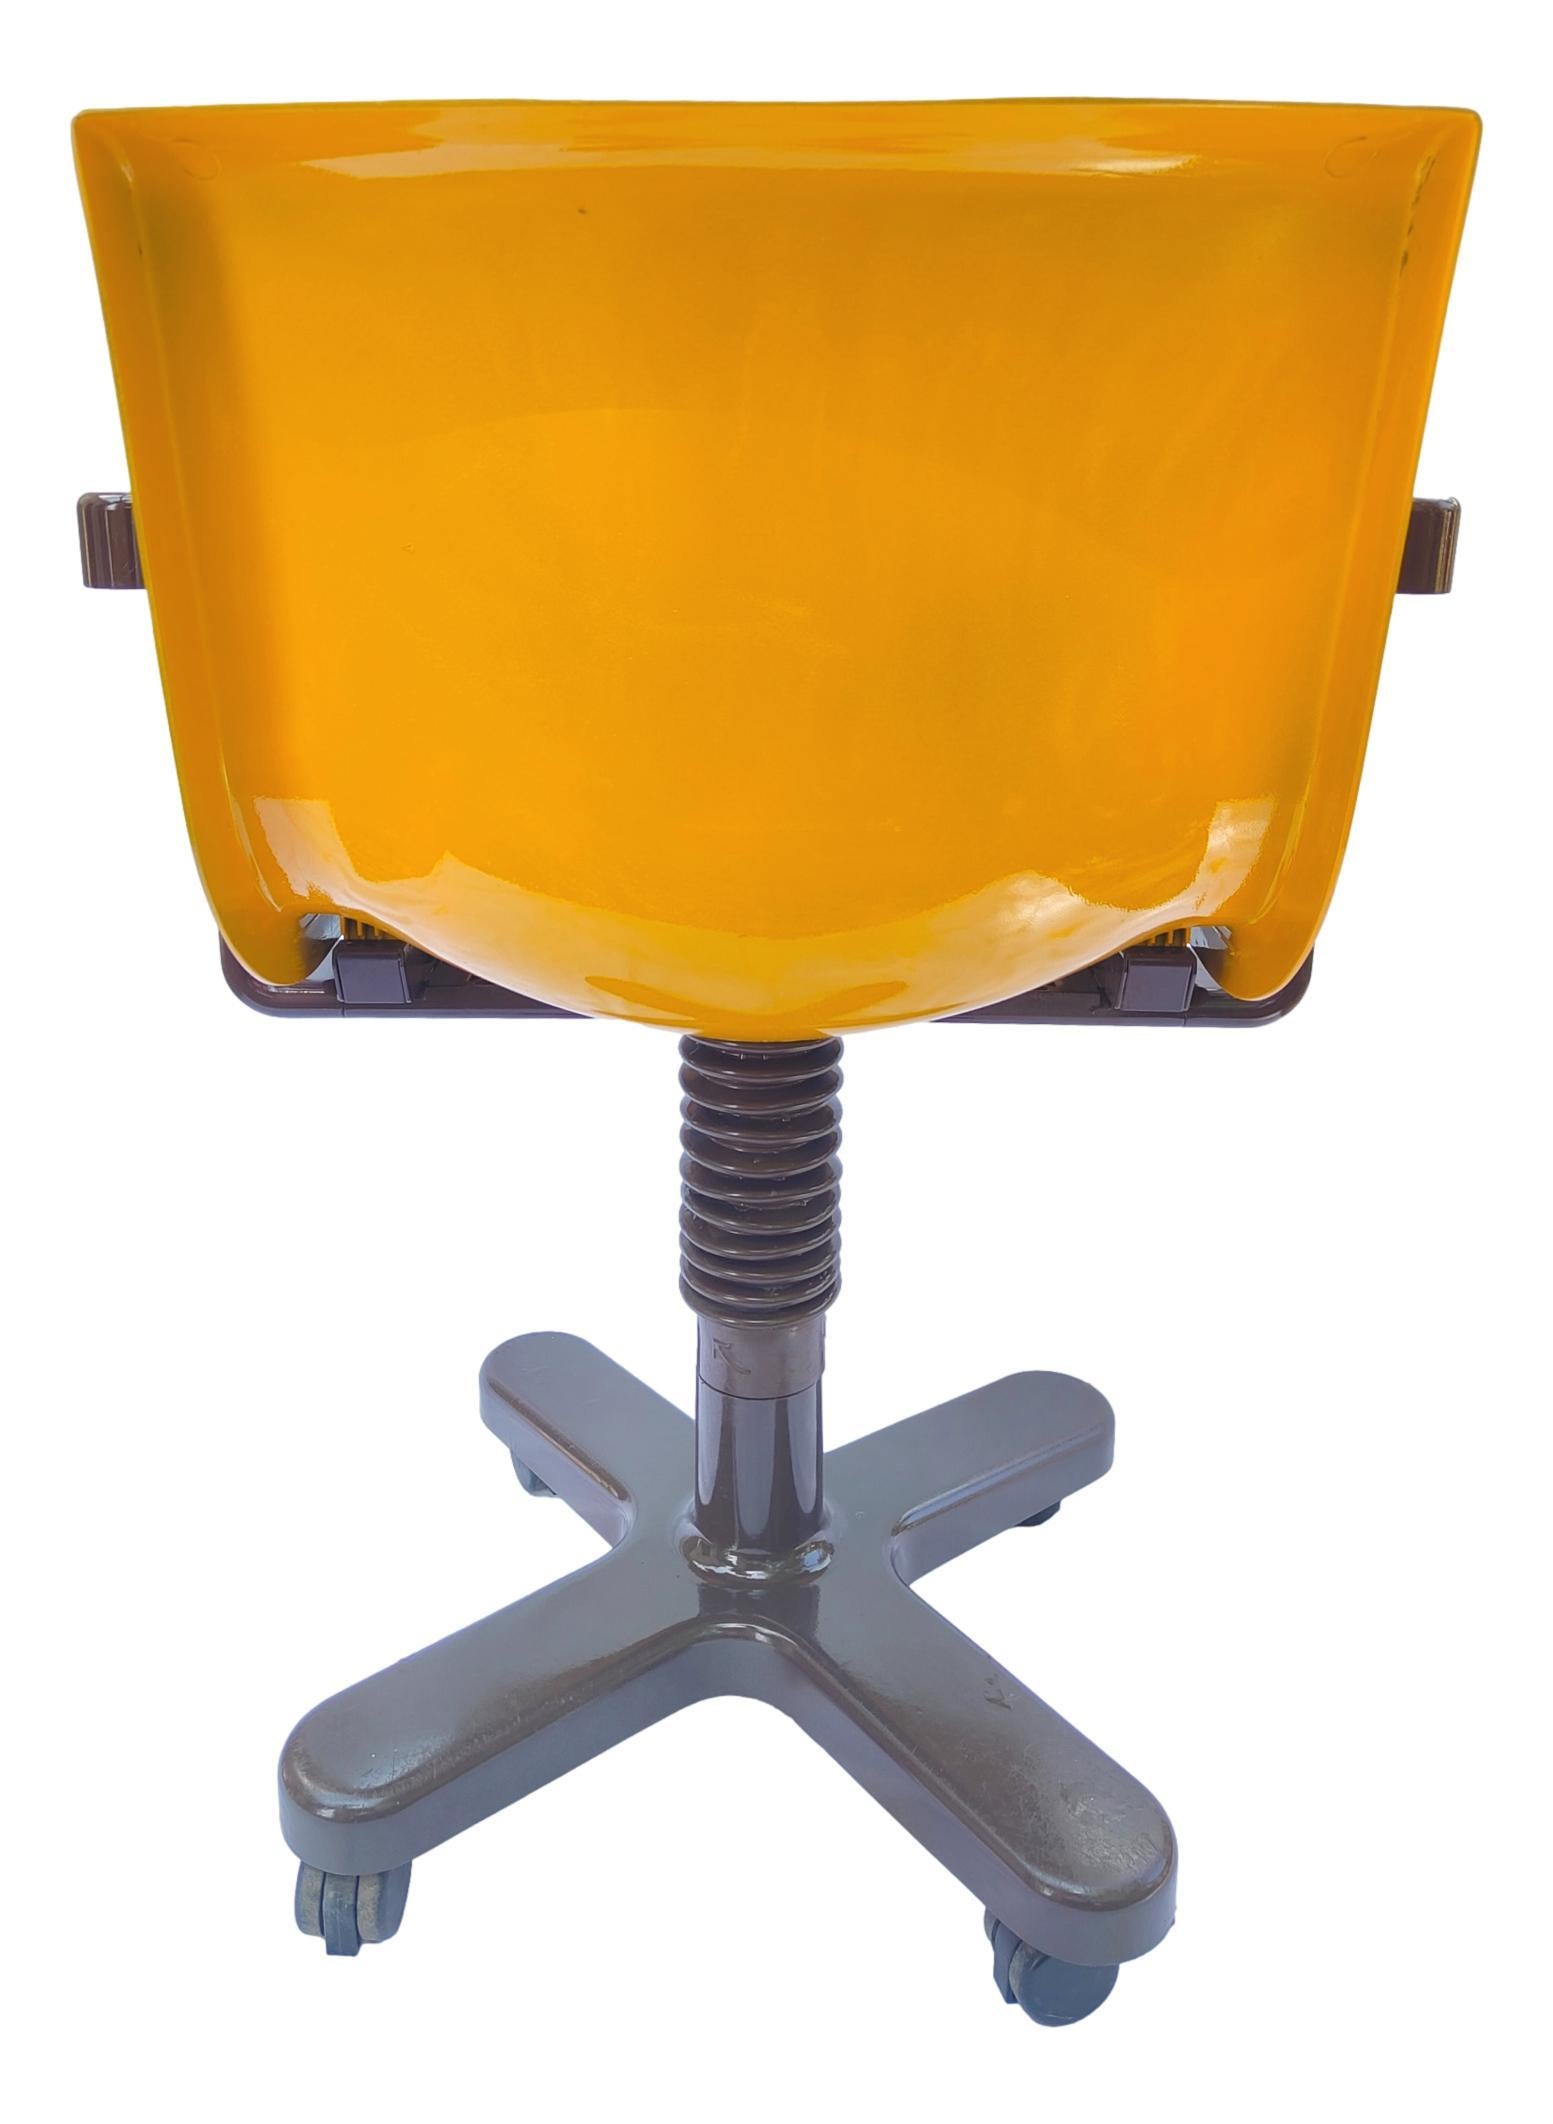 Italian Sedia Da Collezione Desk Chair Olivetti Synthesis Design Ettore Sottsass 1975 For Sale